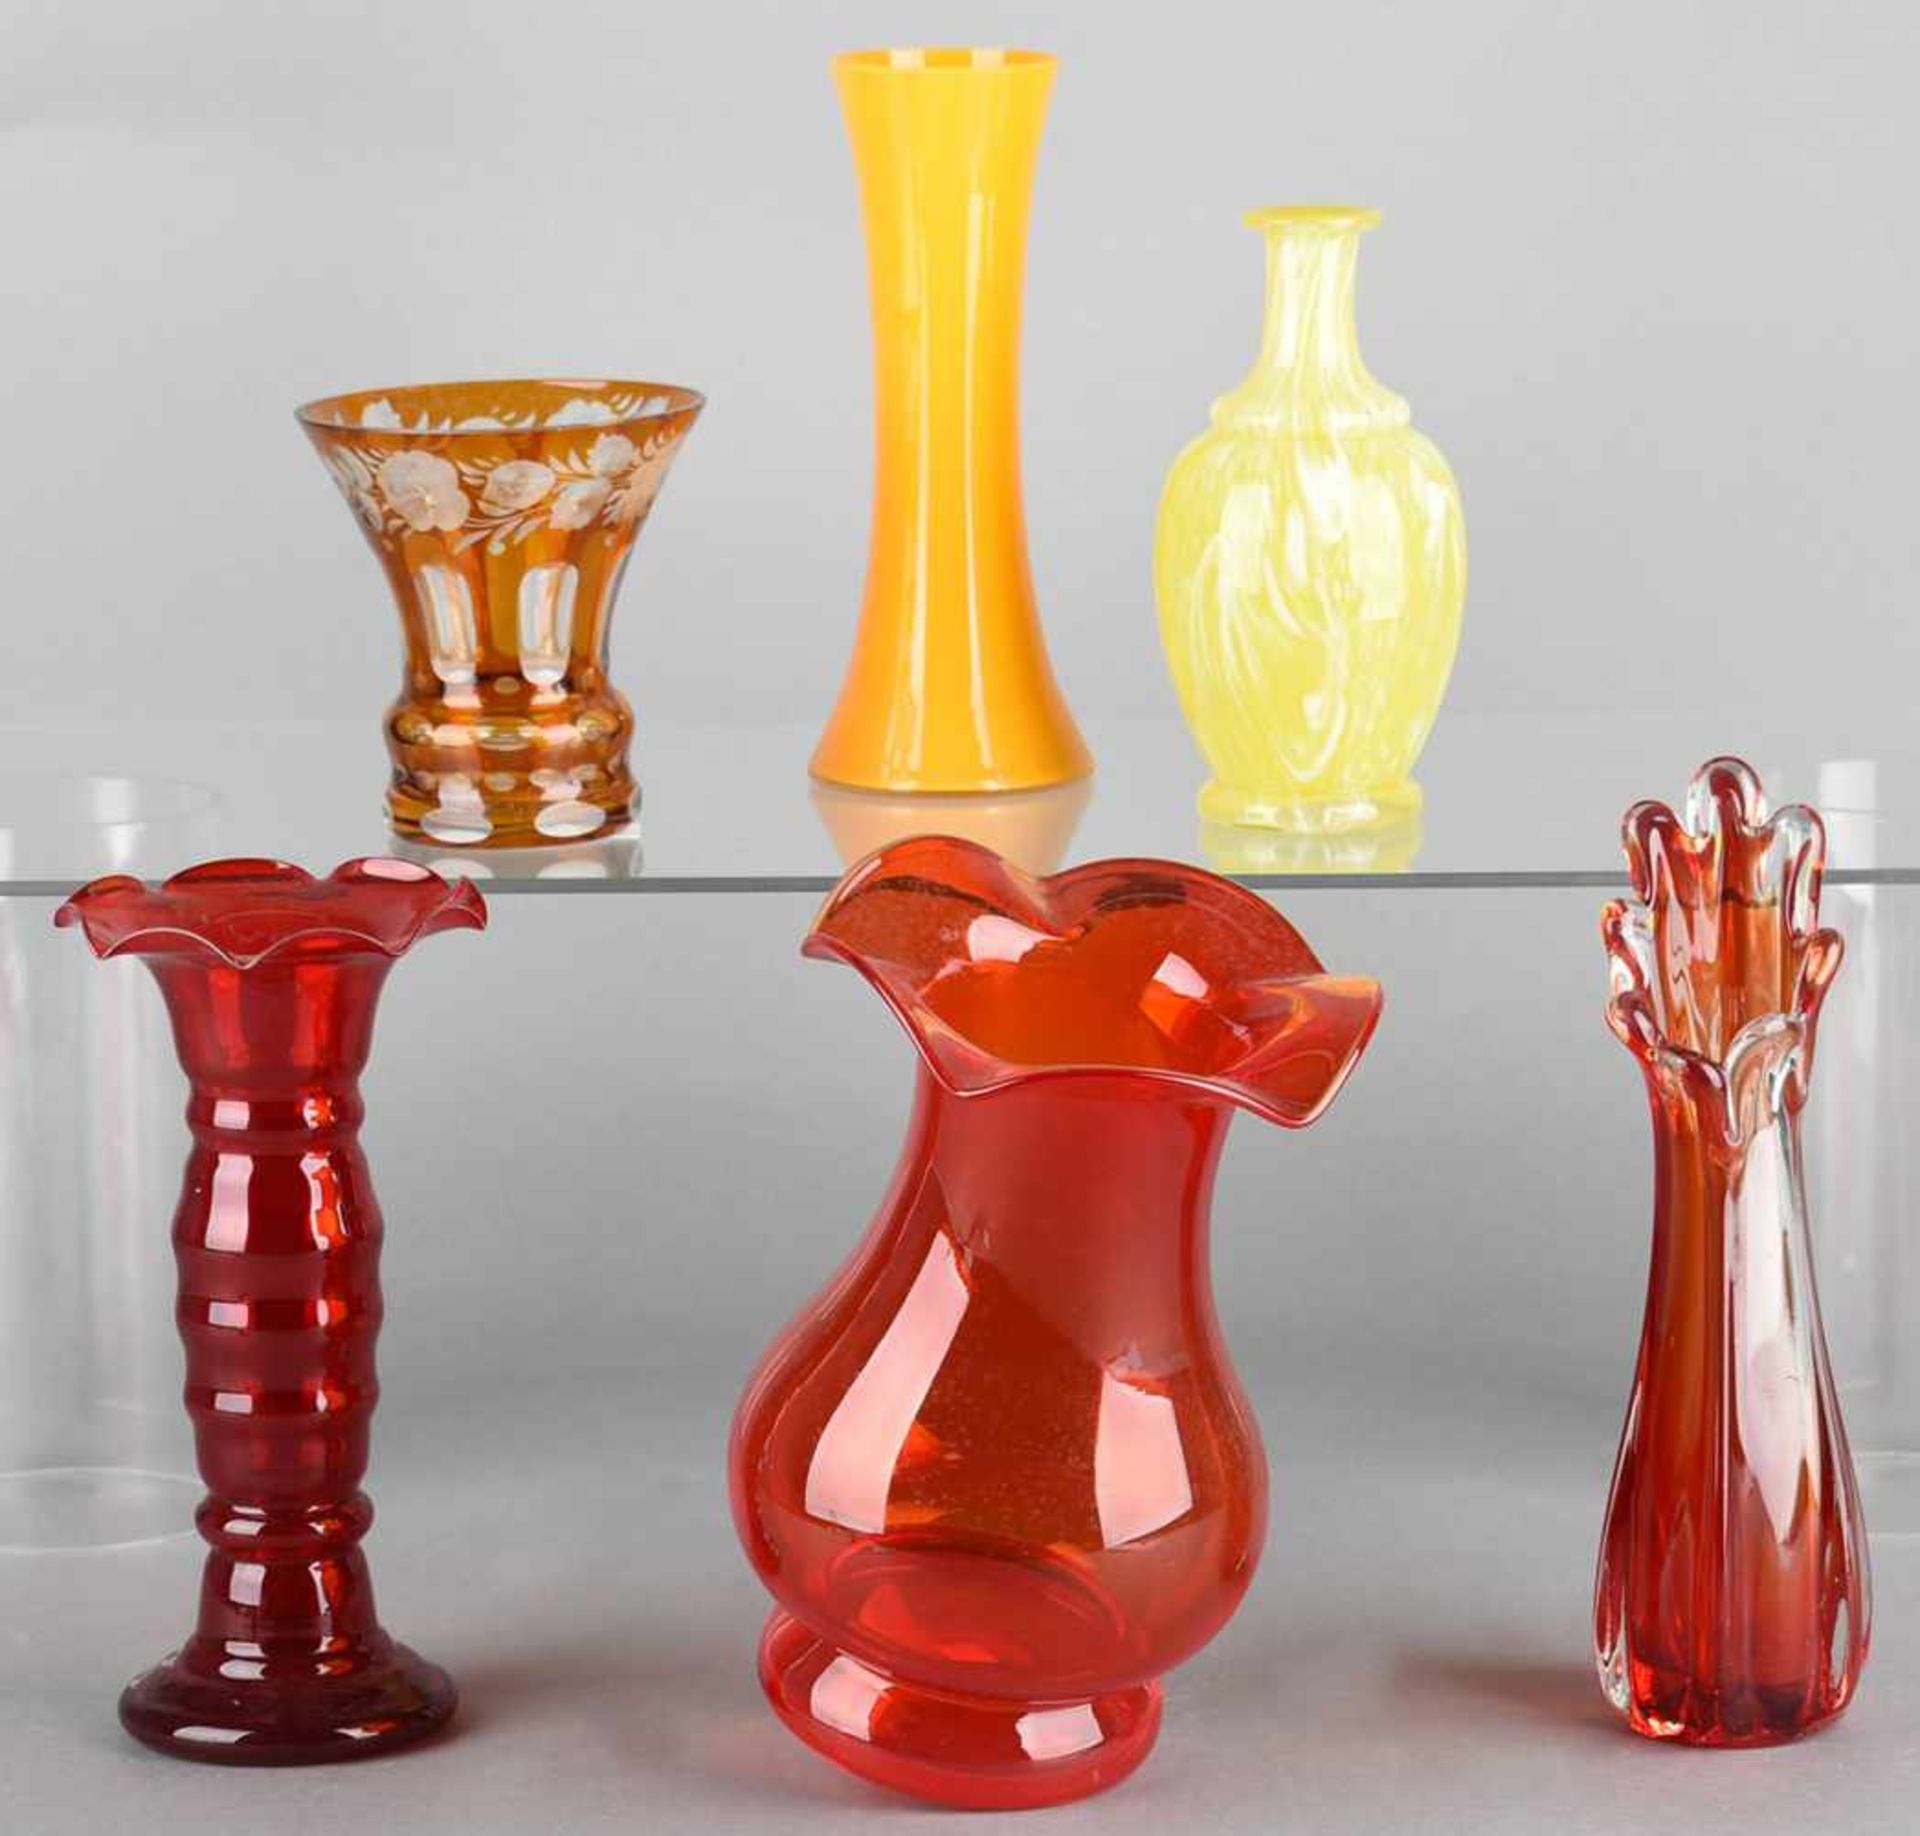 Konvolut Vasen insg. 6 Stück, Stangen-, Trichter- und gebauchte Formen in Rot- und Gelbtönen - Bild 2 aus 2